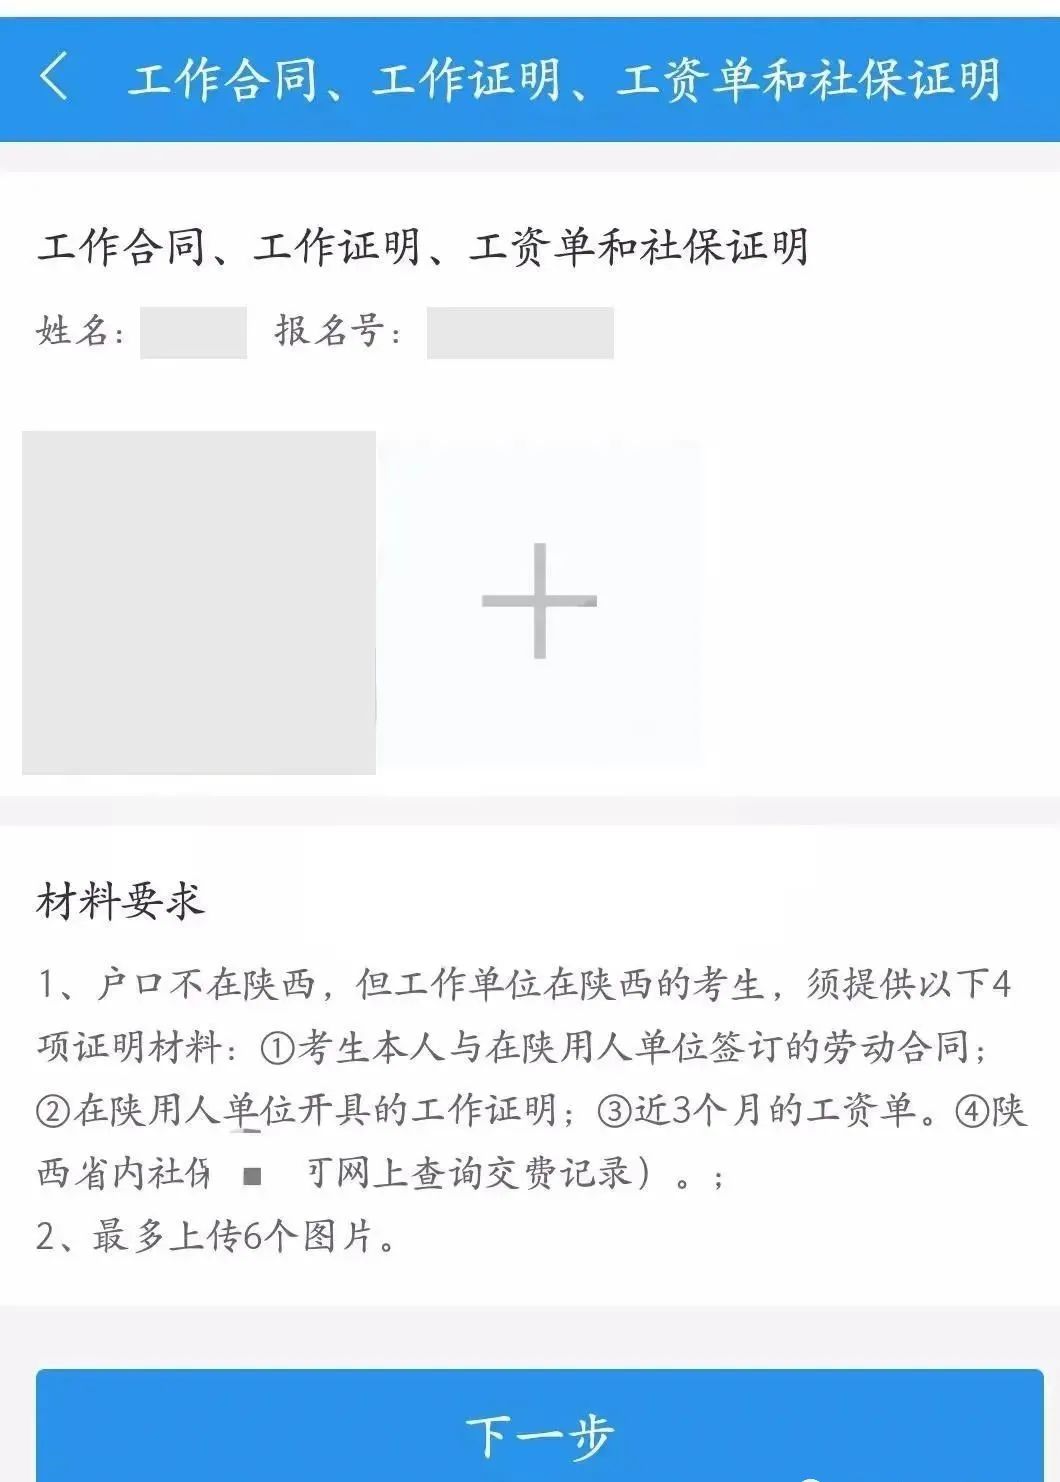 23广州考研网上确认手把手流程总汇